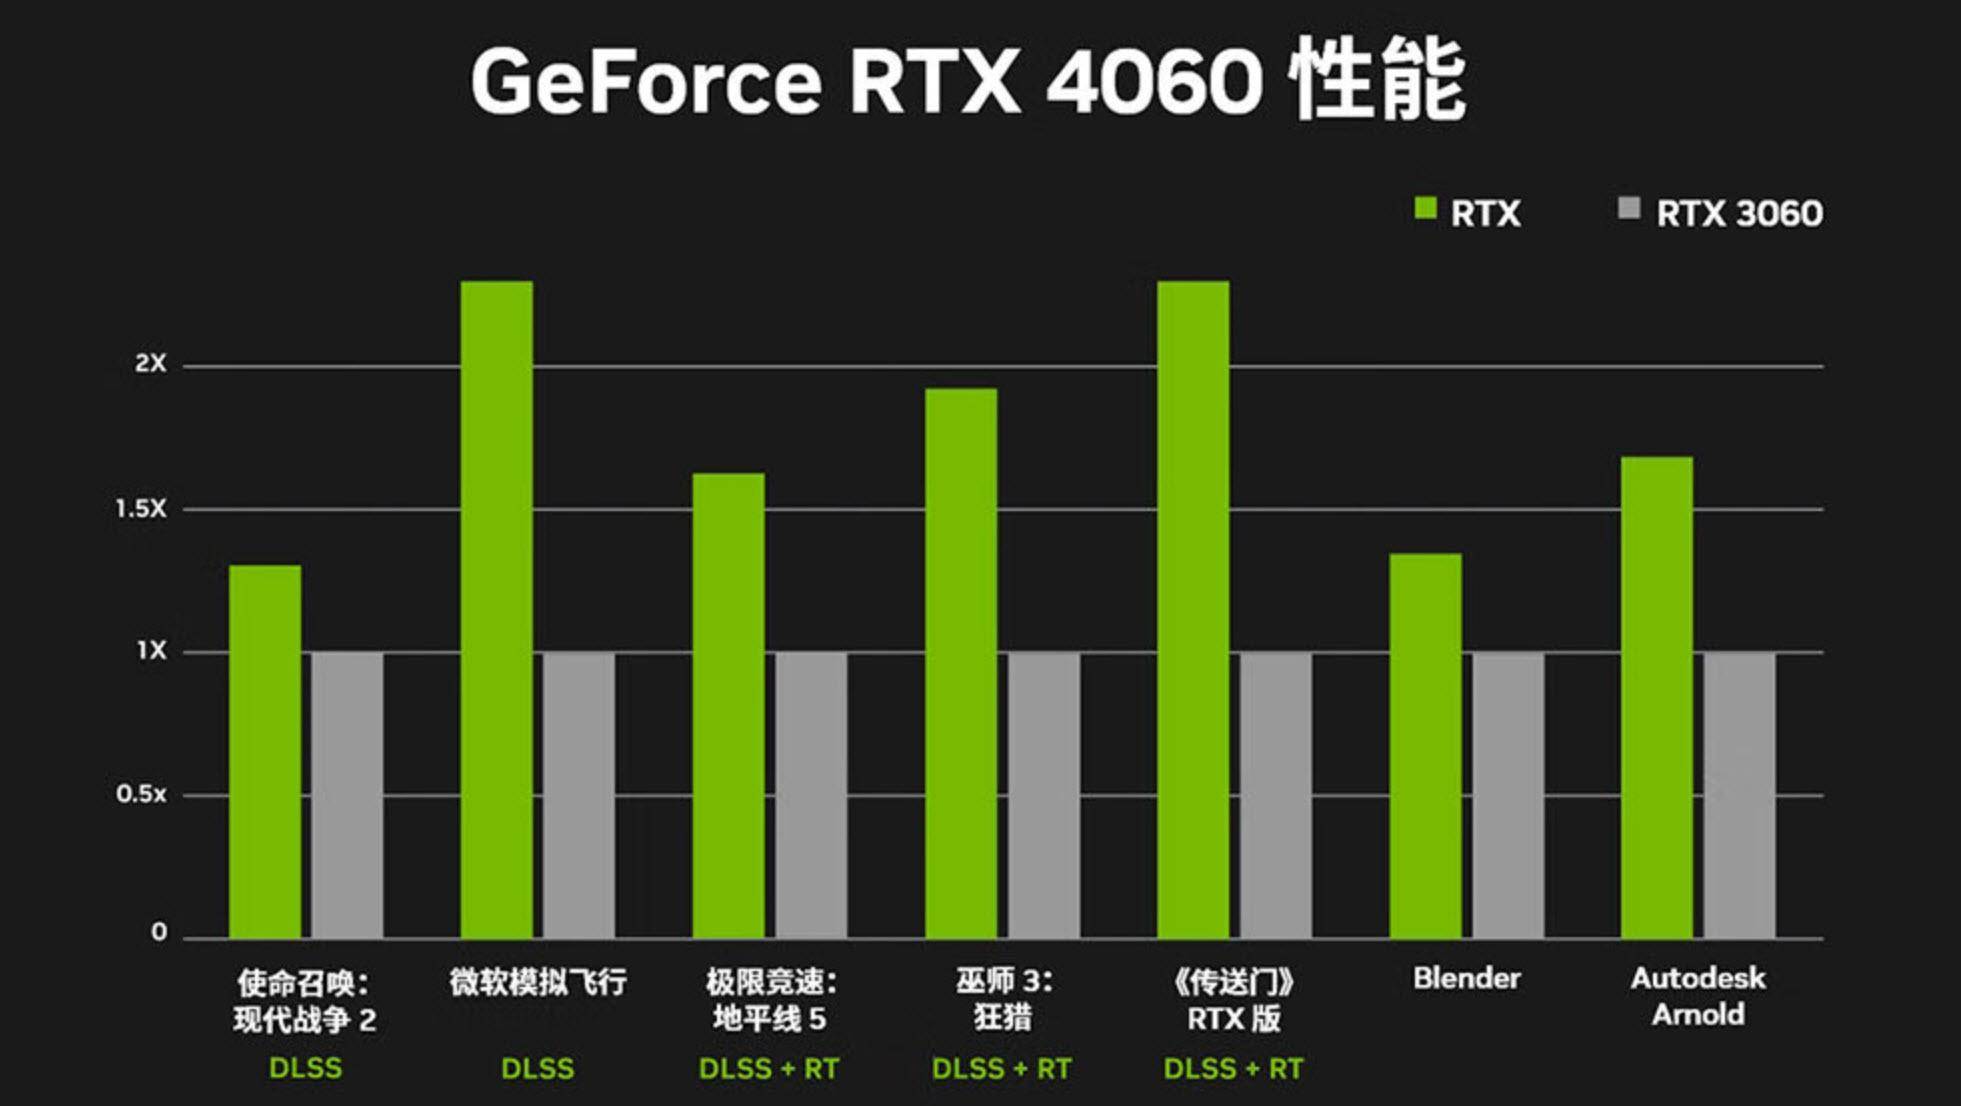 NVIDIA GTX1080性能深度剖析及购买建议：不同价格区间的性价比评估与技术支持